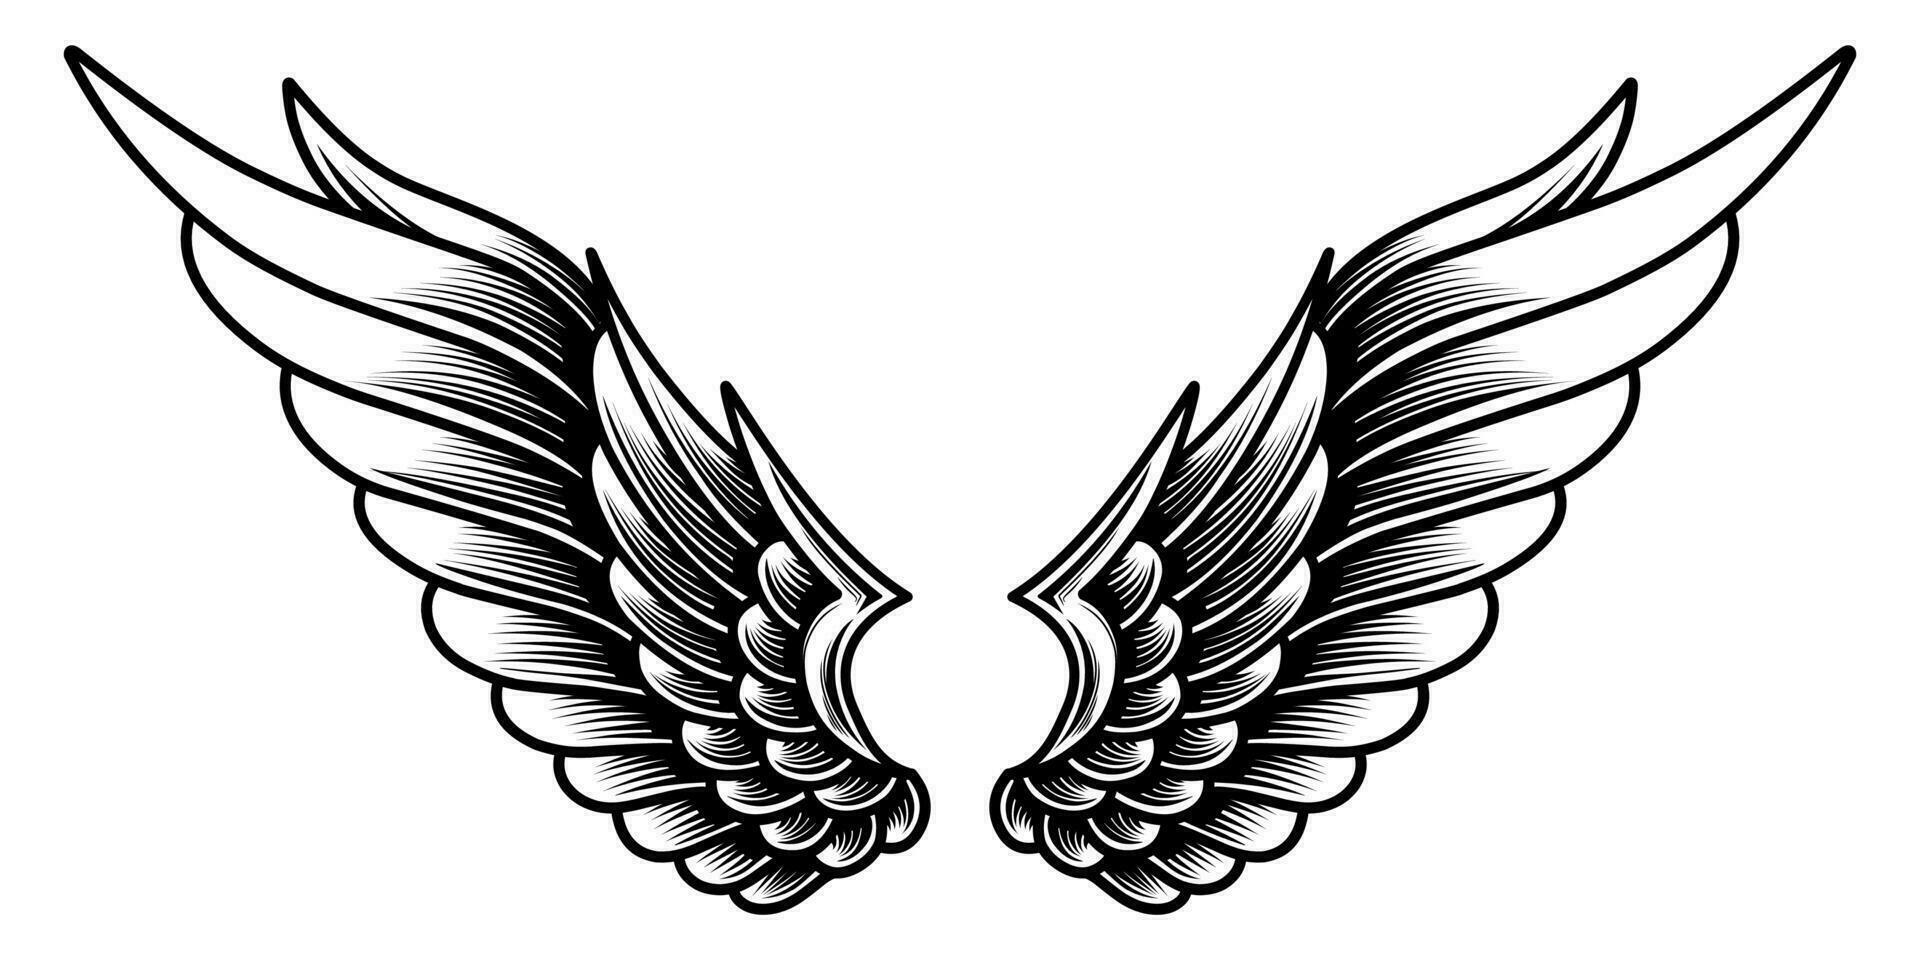 free vector vintage angel wings tattoo